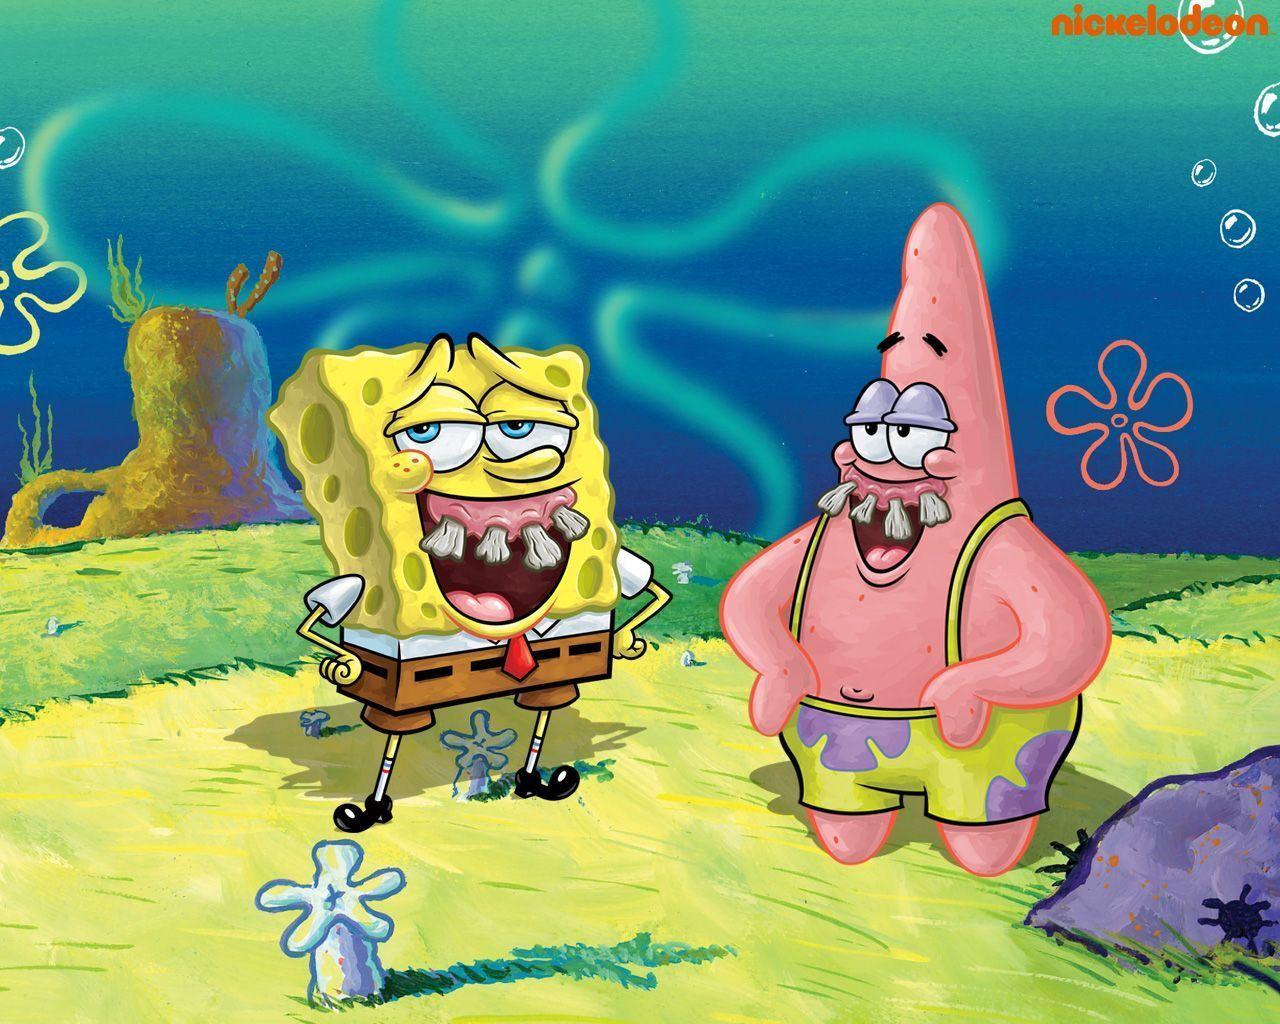 Spongebob & Patrick Squarepants Wallpaper 31281711